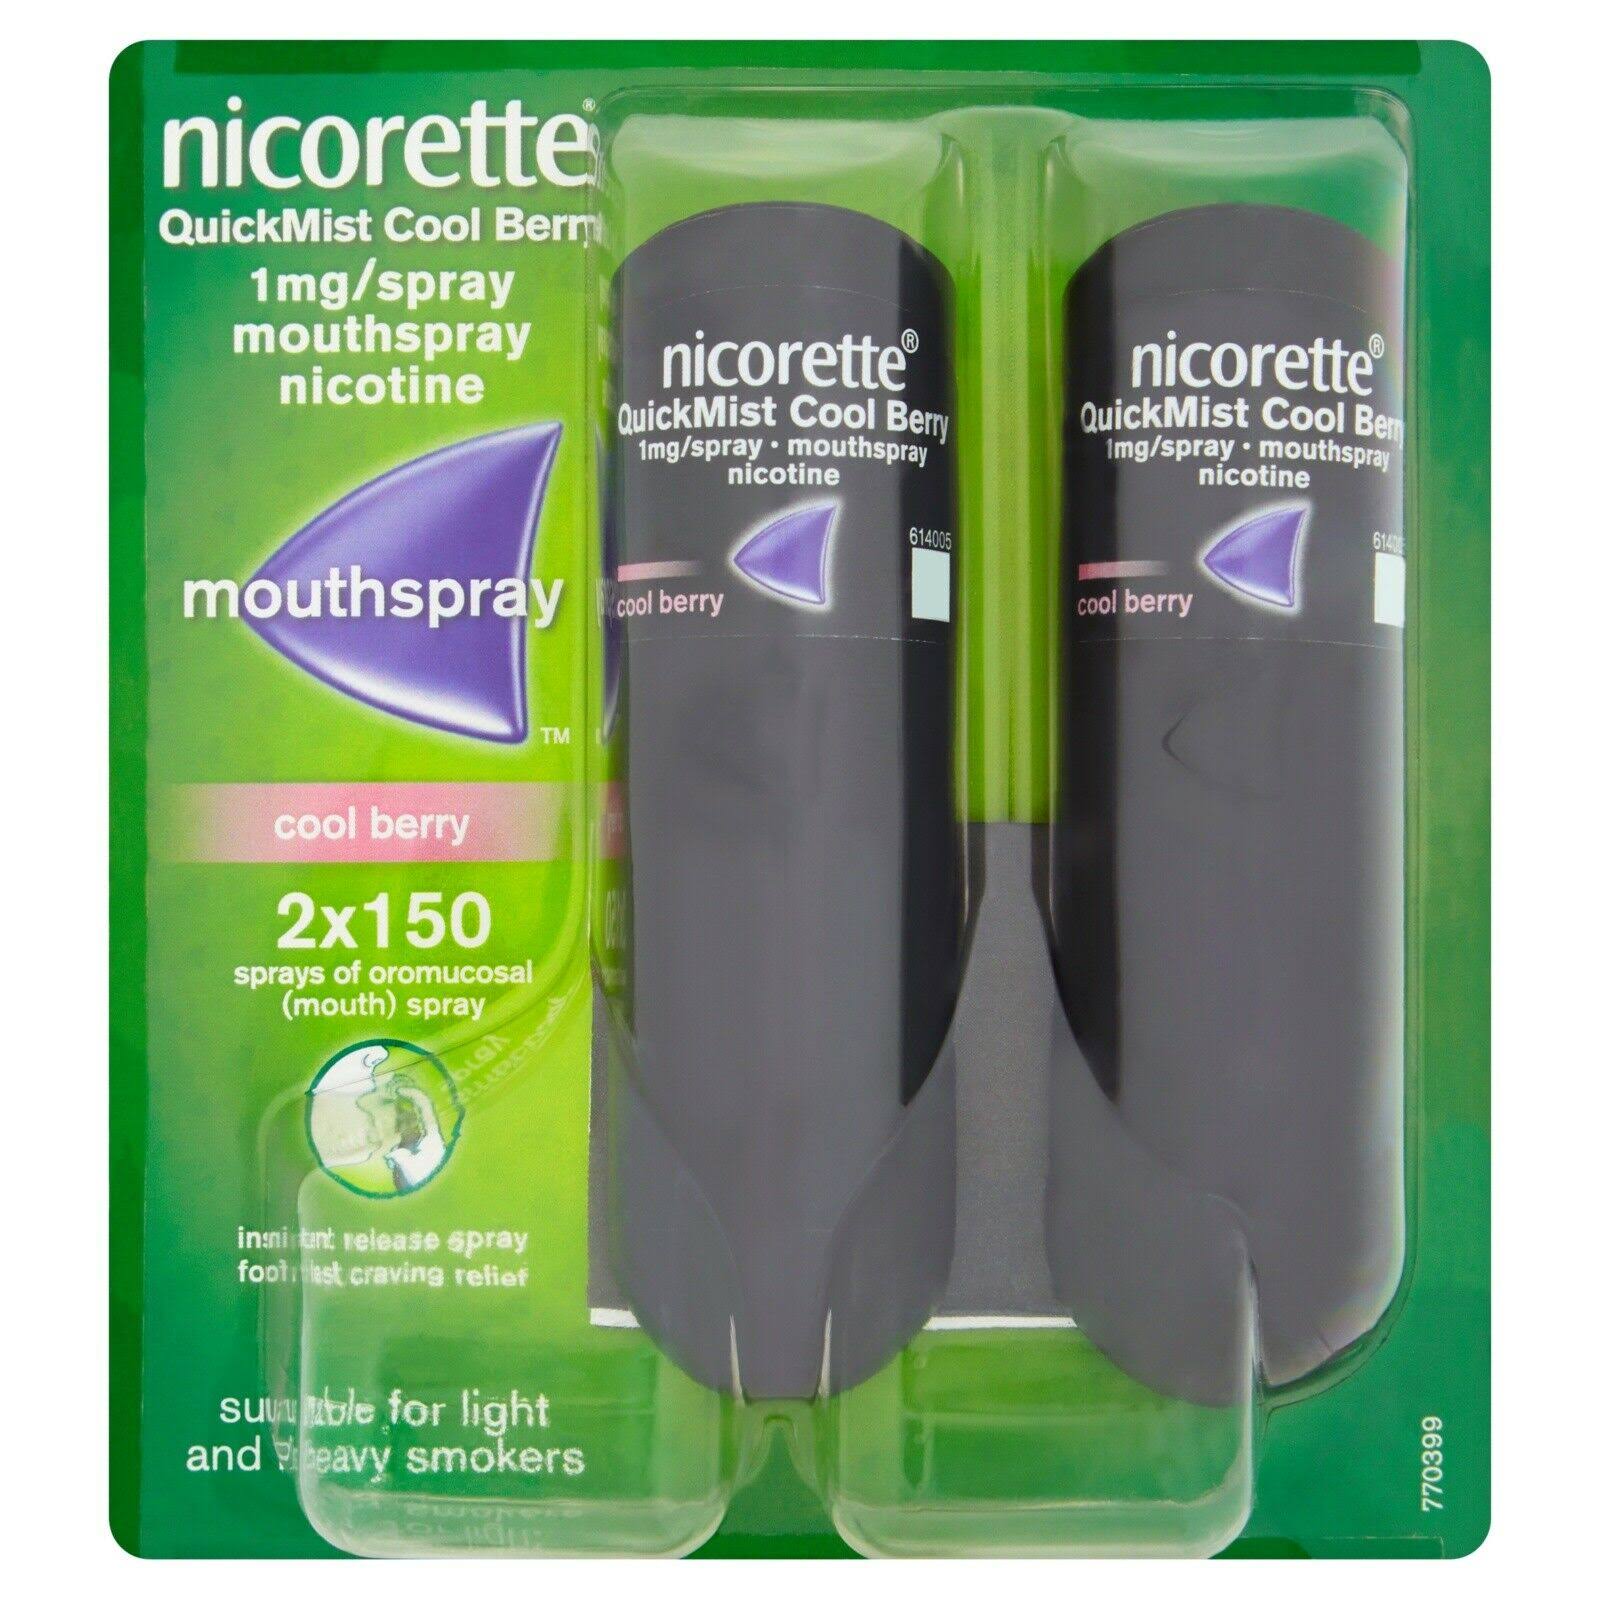 Nicorette QuickMist Cool Berry Mouth Spray - 1mg/Spray, 150 Sprays, 2-Pack